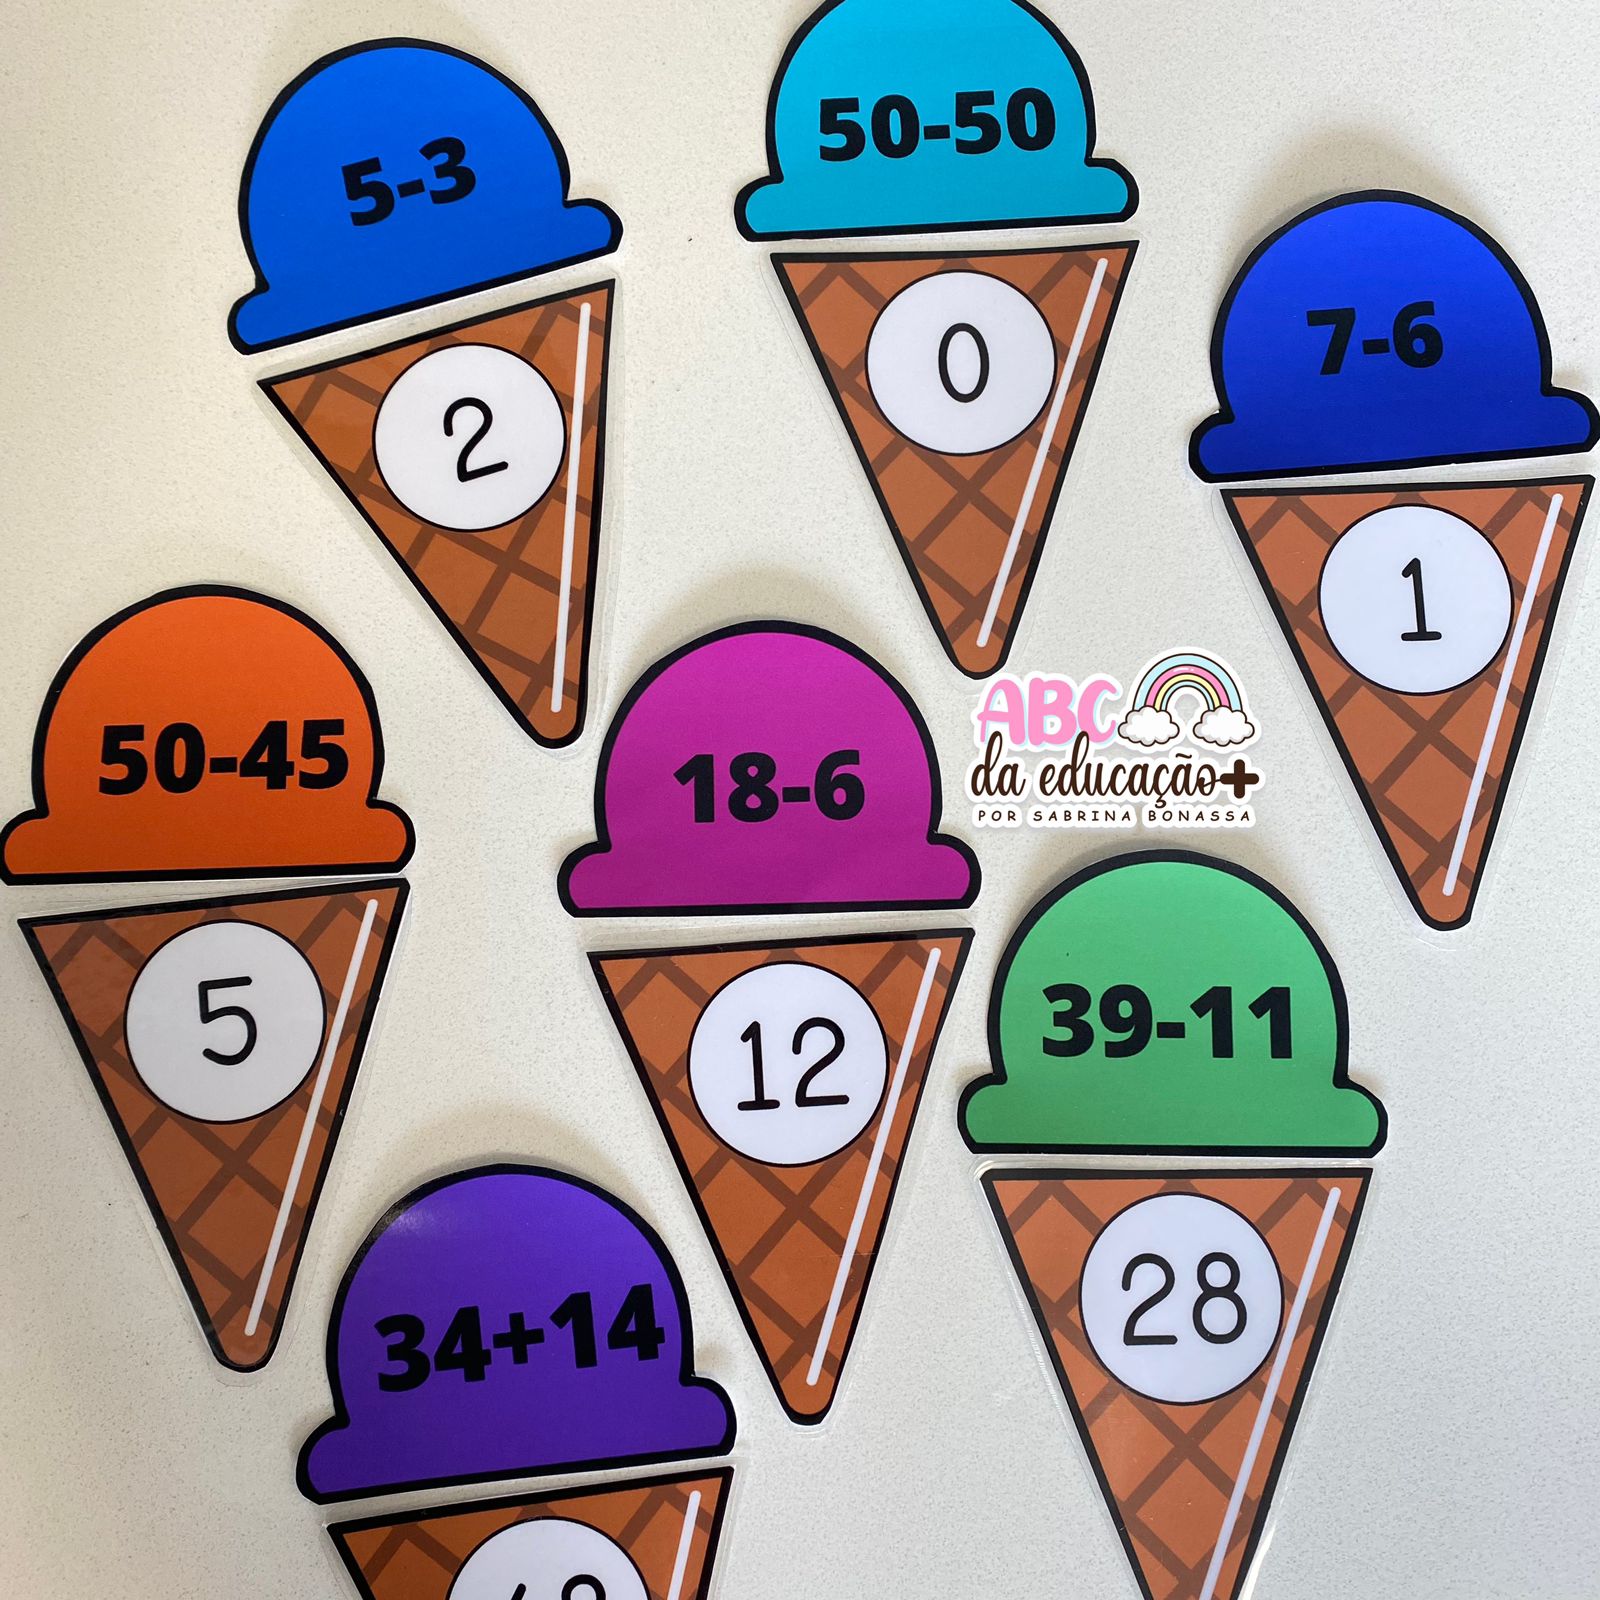 Ice Cream Subtraindo, Jogo Pedagógico 30 Operações Matemáticas para  Alfabetização, Ideias e Palavras